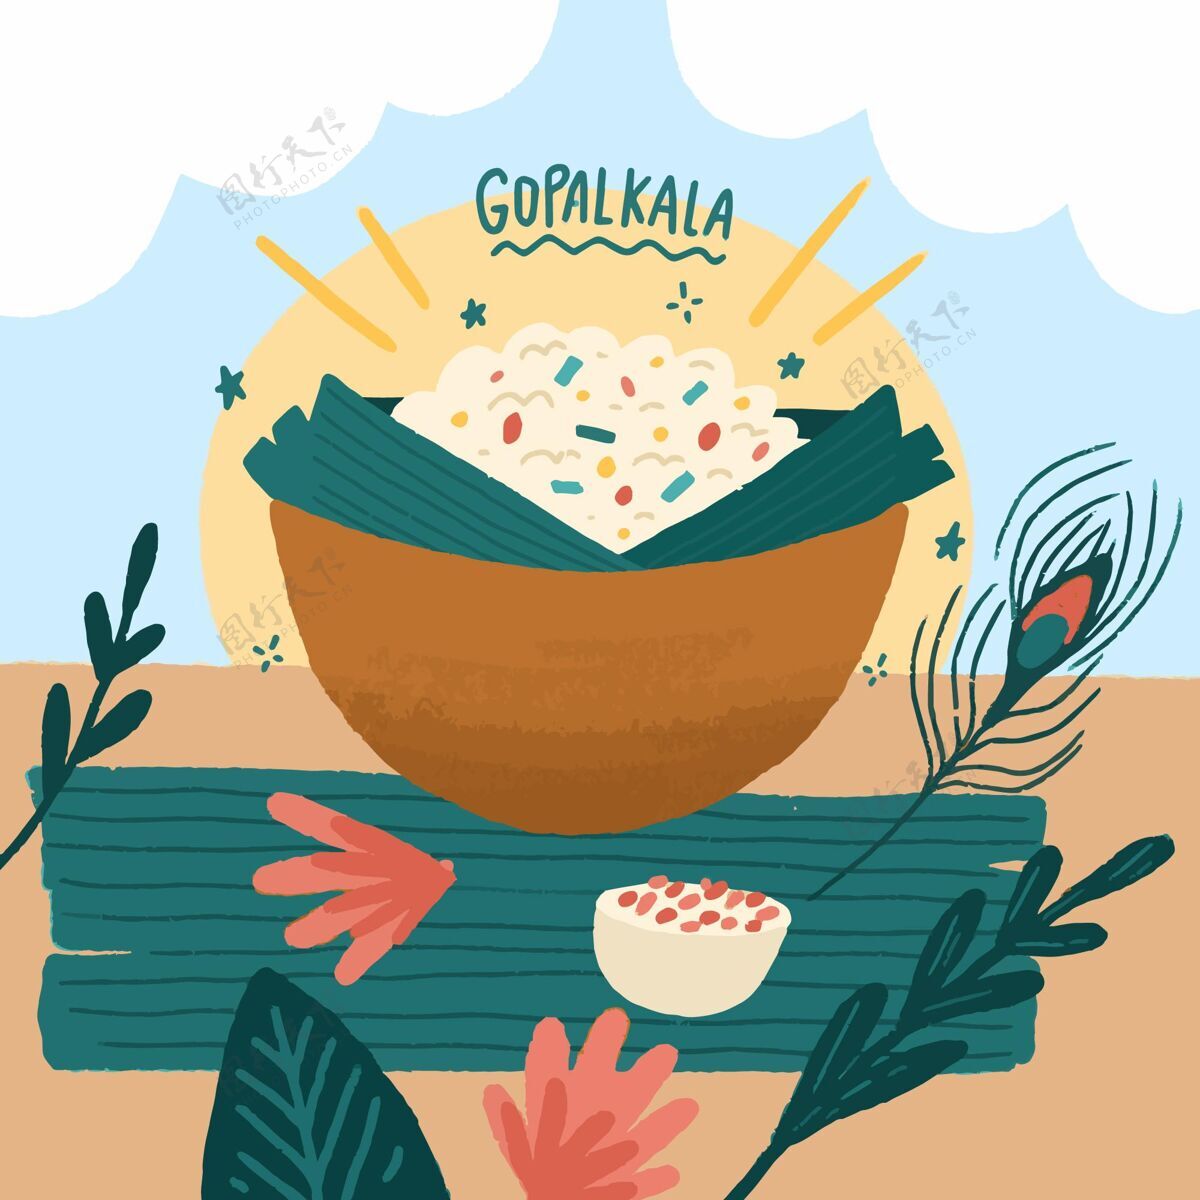 米饭手绘gopalkala插图活动米饭食物